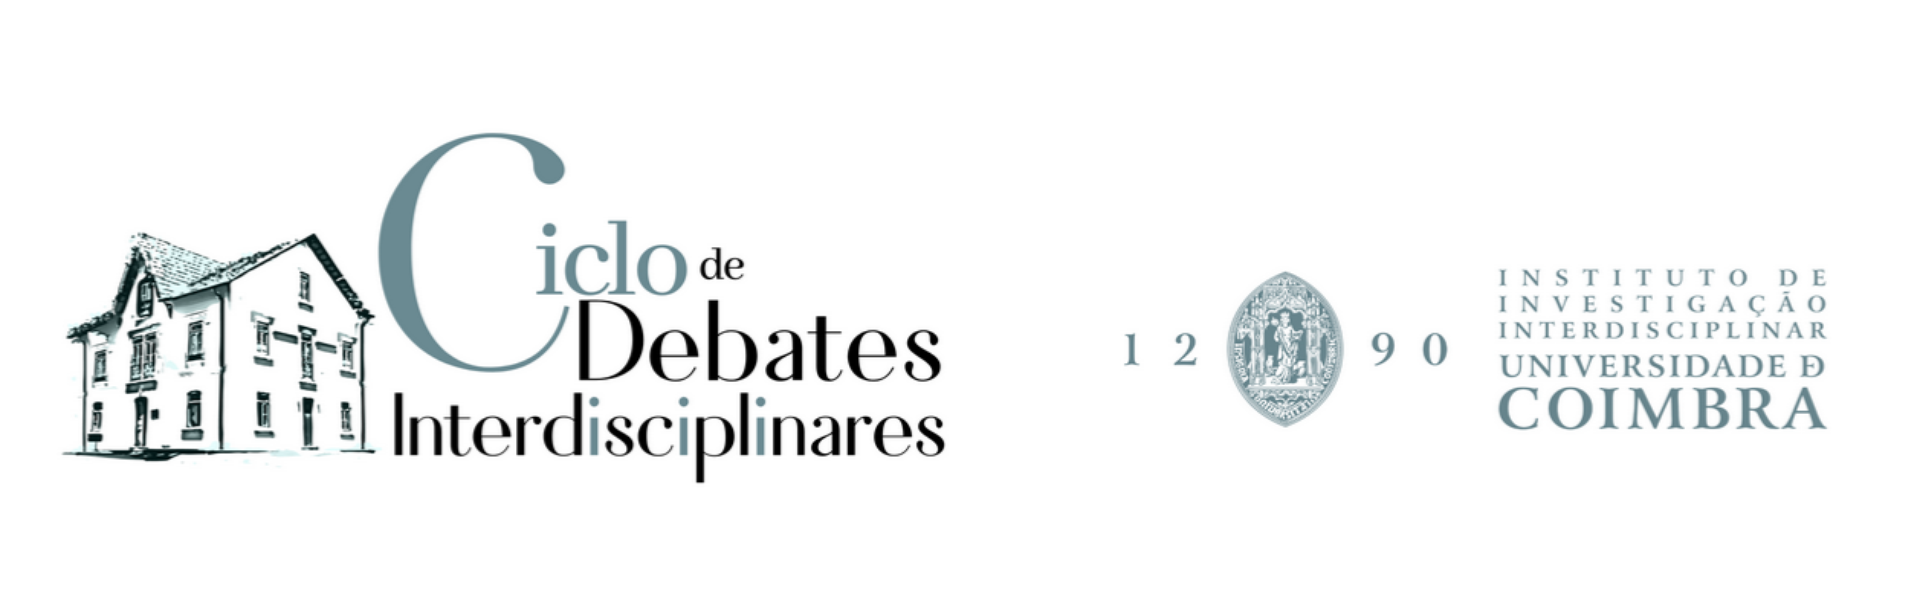 Ciclo de Debates Interdisciplinares | IIIUC